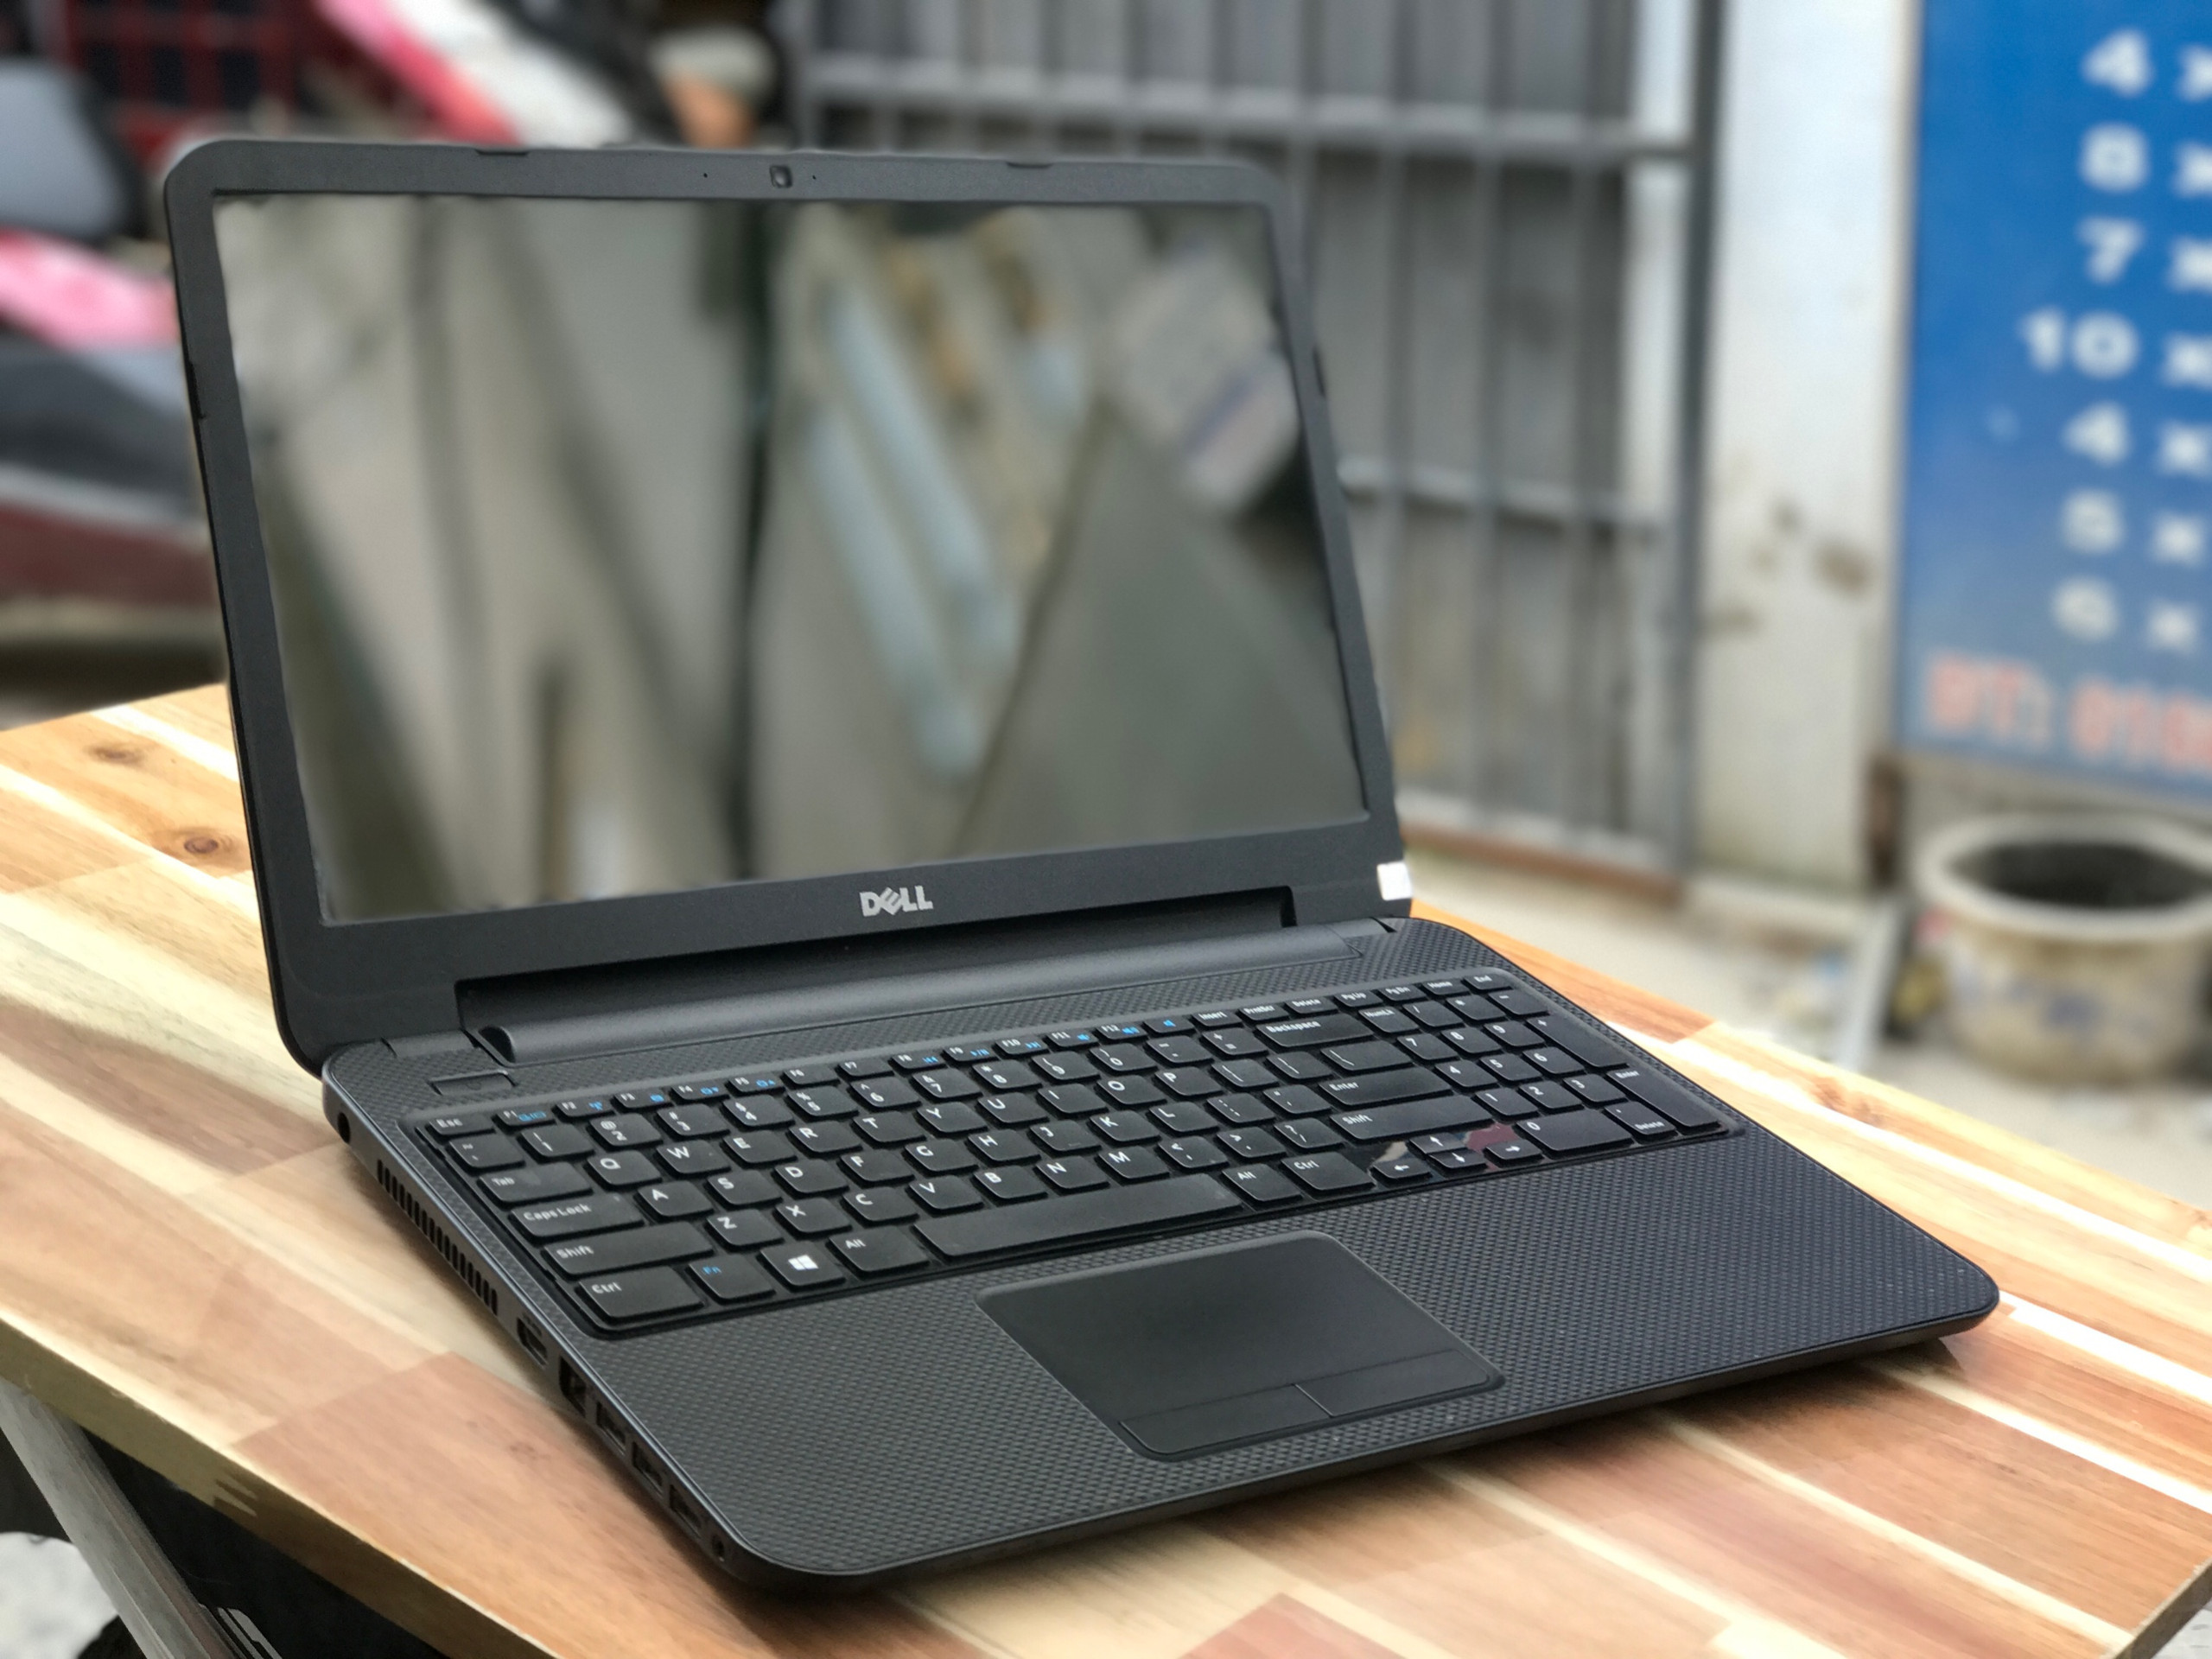 Laptop Dell Inspiron 3537, i5 4200U 4G 500G Vga rời 2G Đẹp zin 100% Giá rẻ3